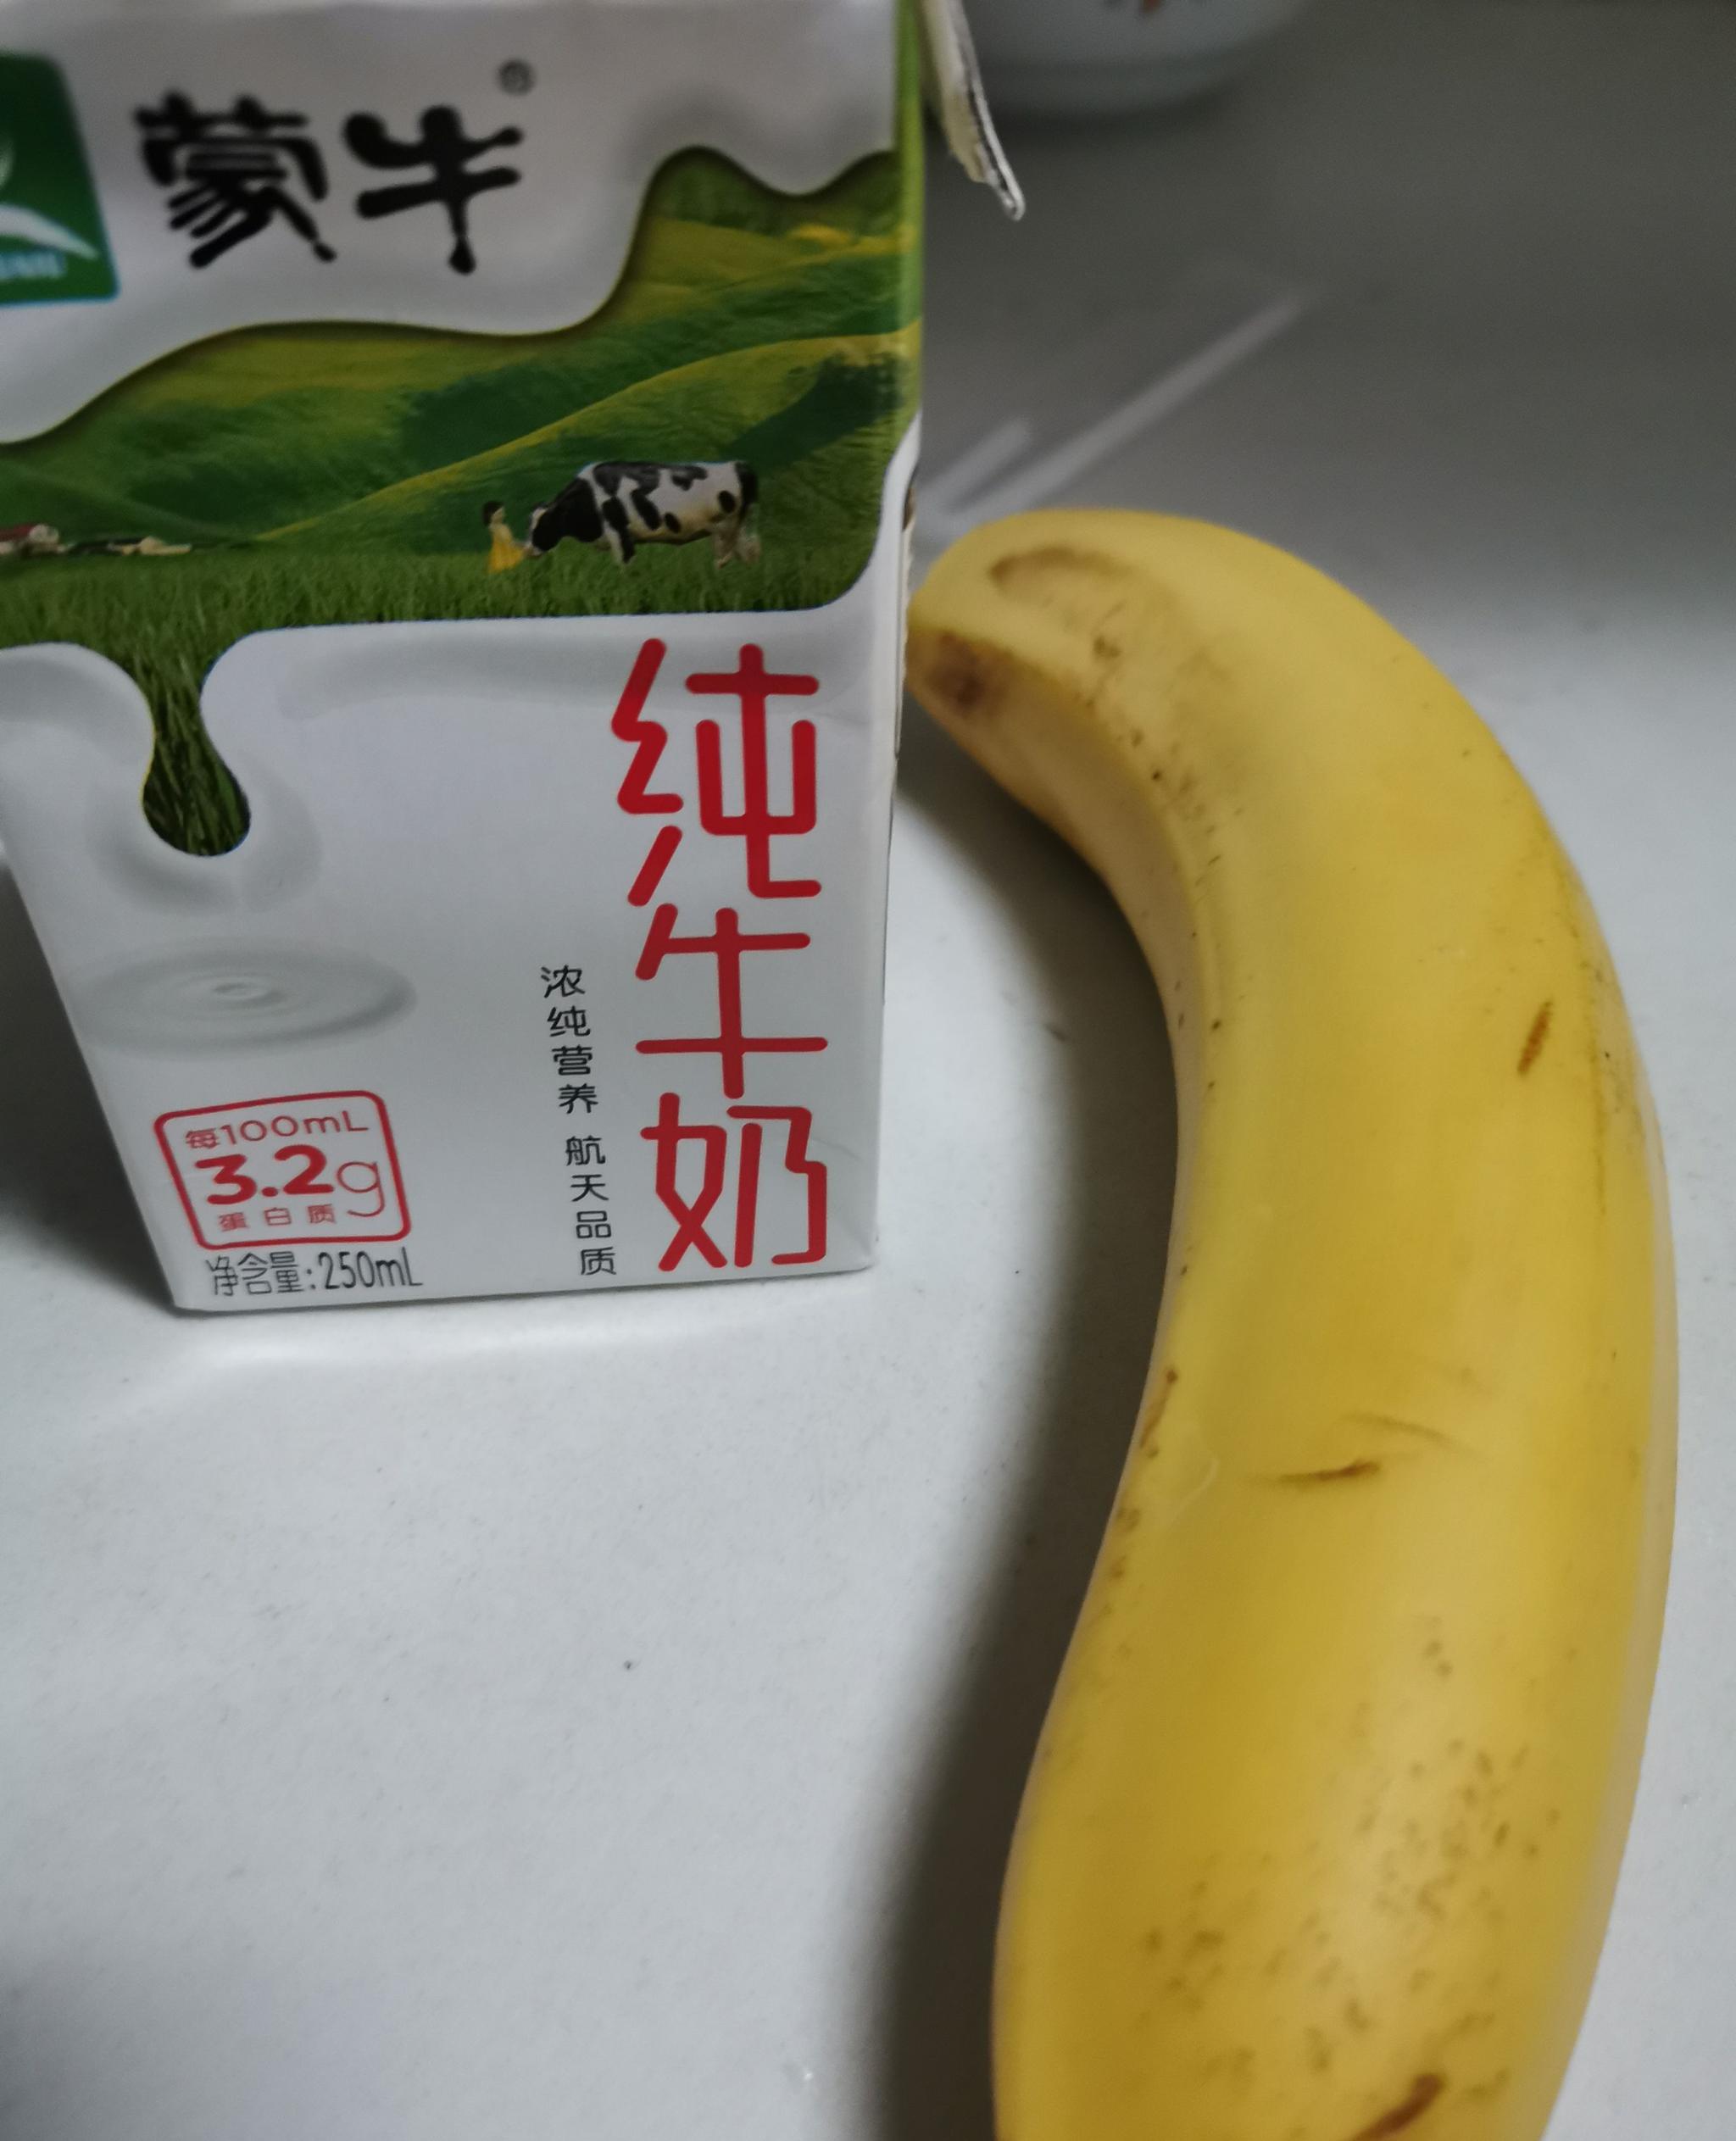 香蕉牛奶 - 济源市优洋饮品有限公司（官网）